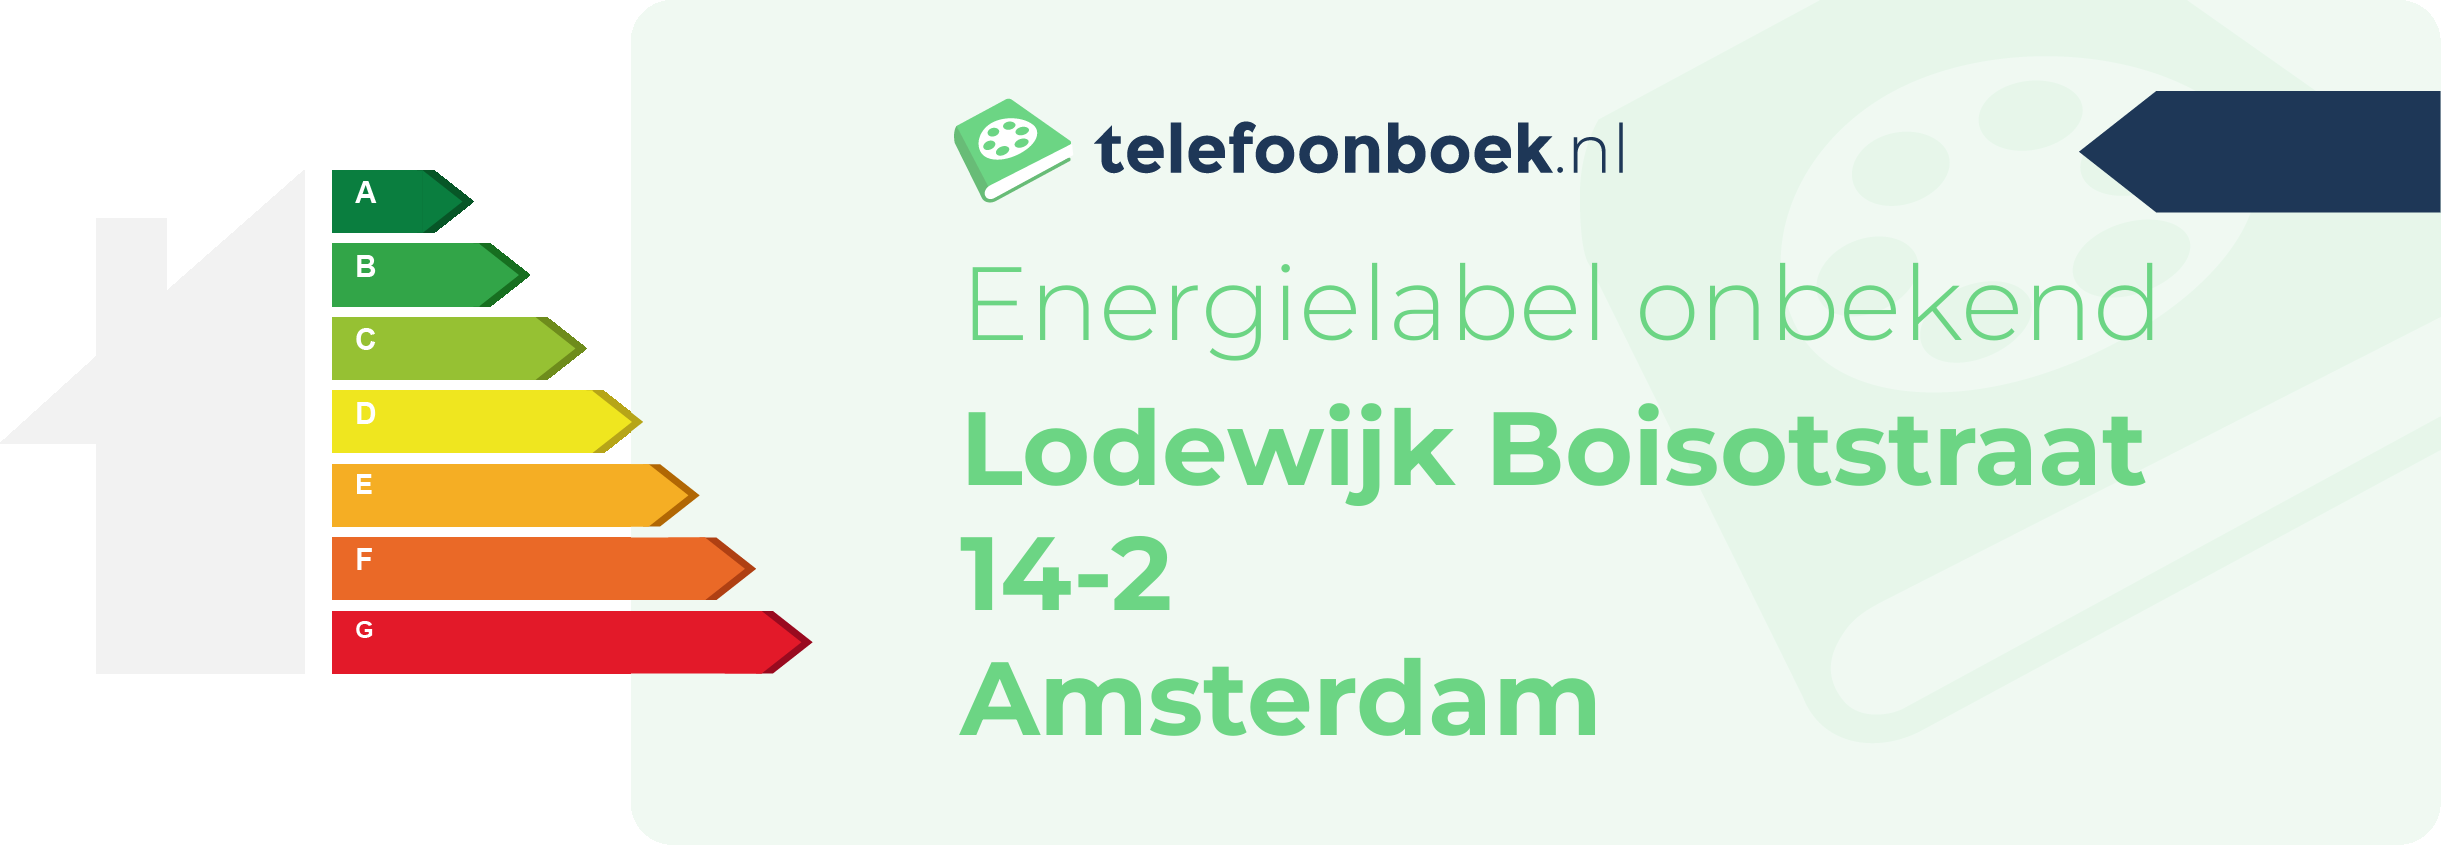 Energielabel Lodewijk Boisotstraat 14-2 Amsterdam